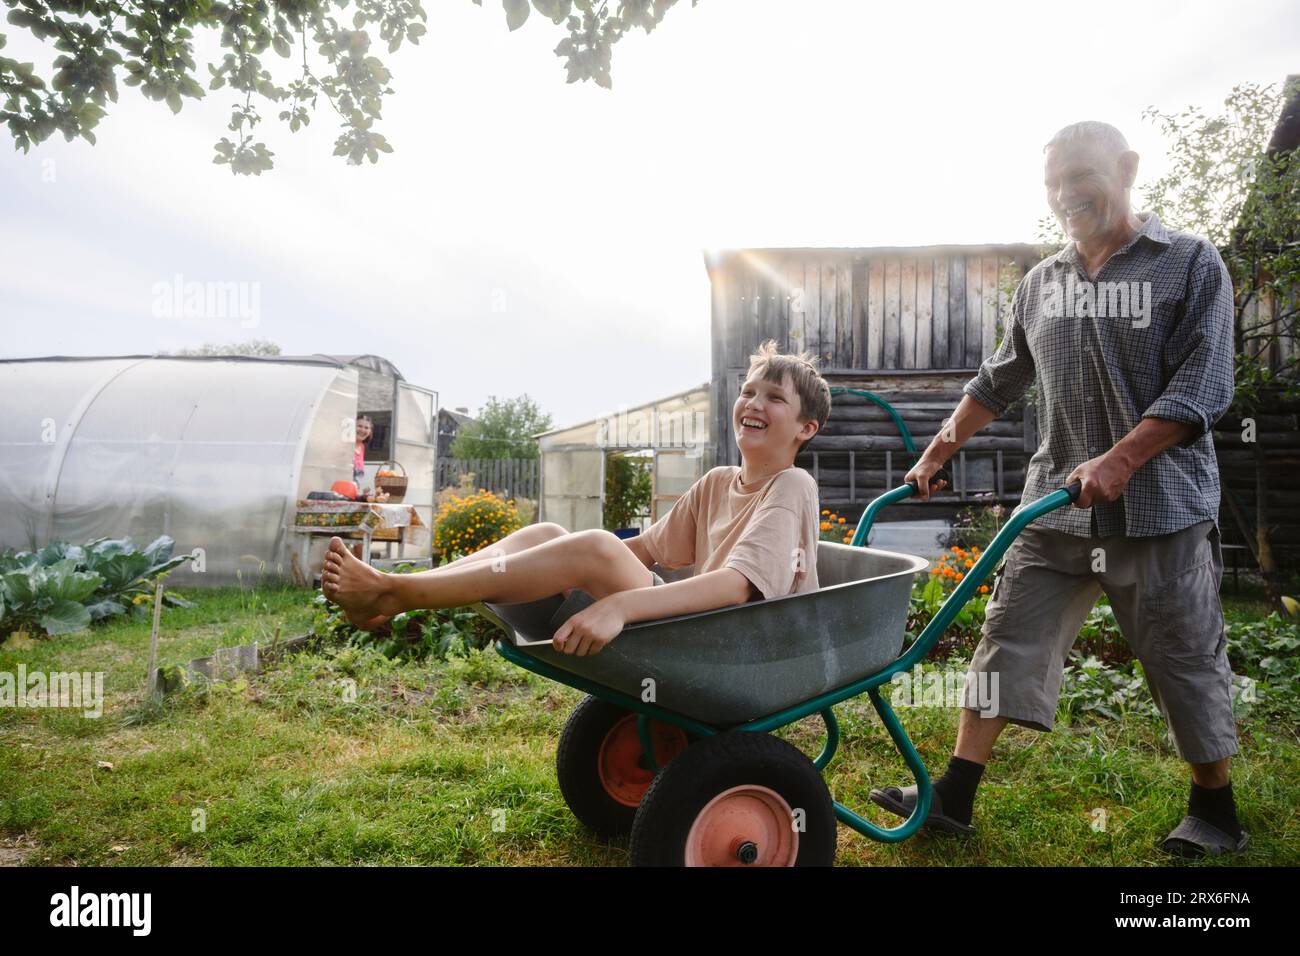 Smiling grandfather riding grandson on wheelbarrow in garden Stock Photo